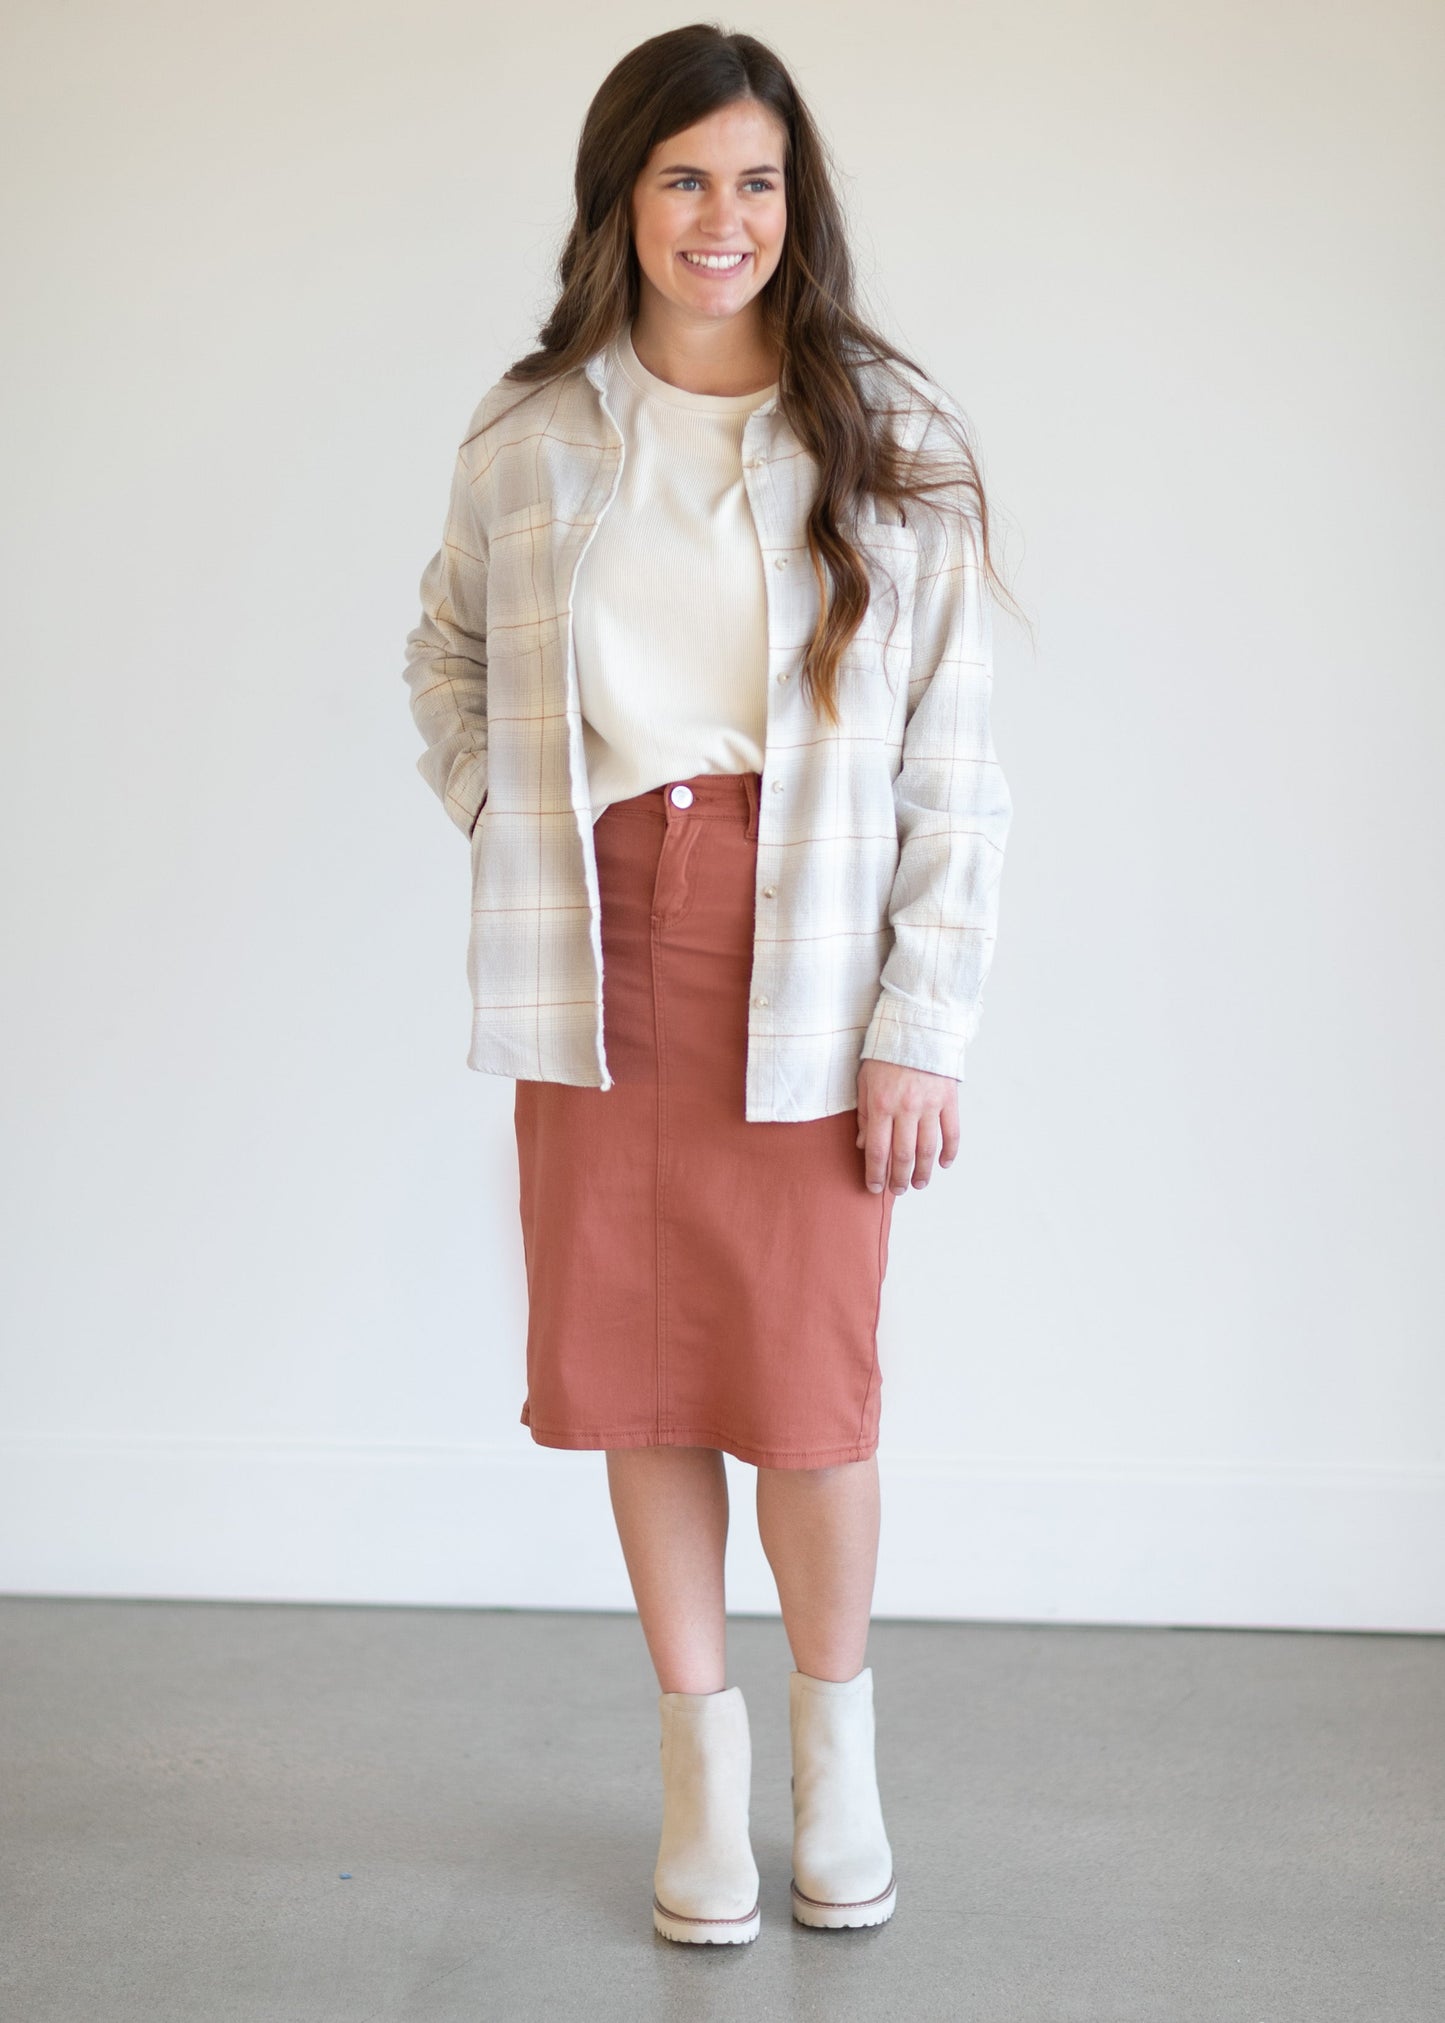 Remi Rusty Brick Denim Midi Skirt - FINAL SALE Skirts